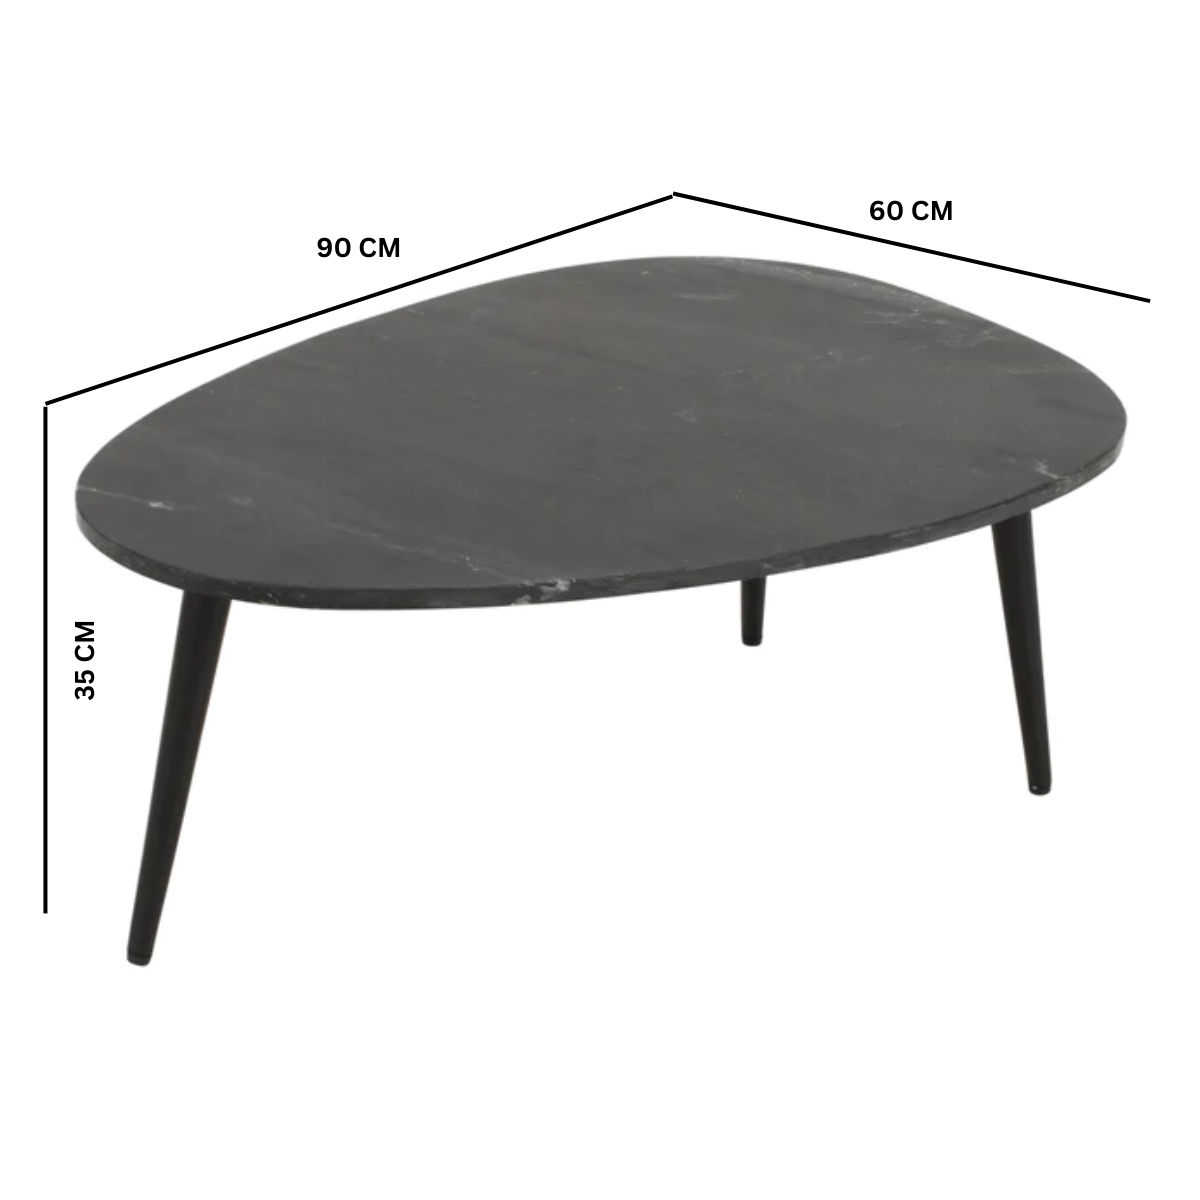 Kelwa handmade black marble coffee table with 3 metal legs | malletandplane.com